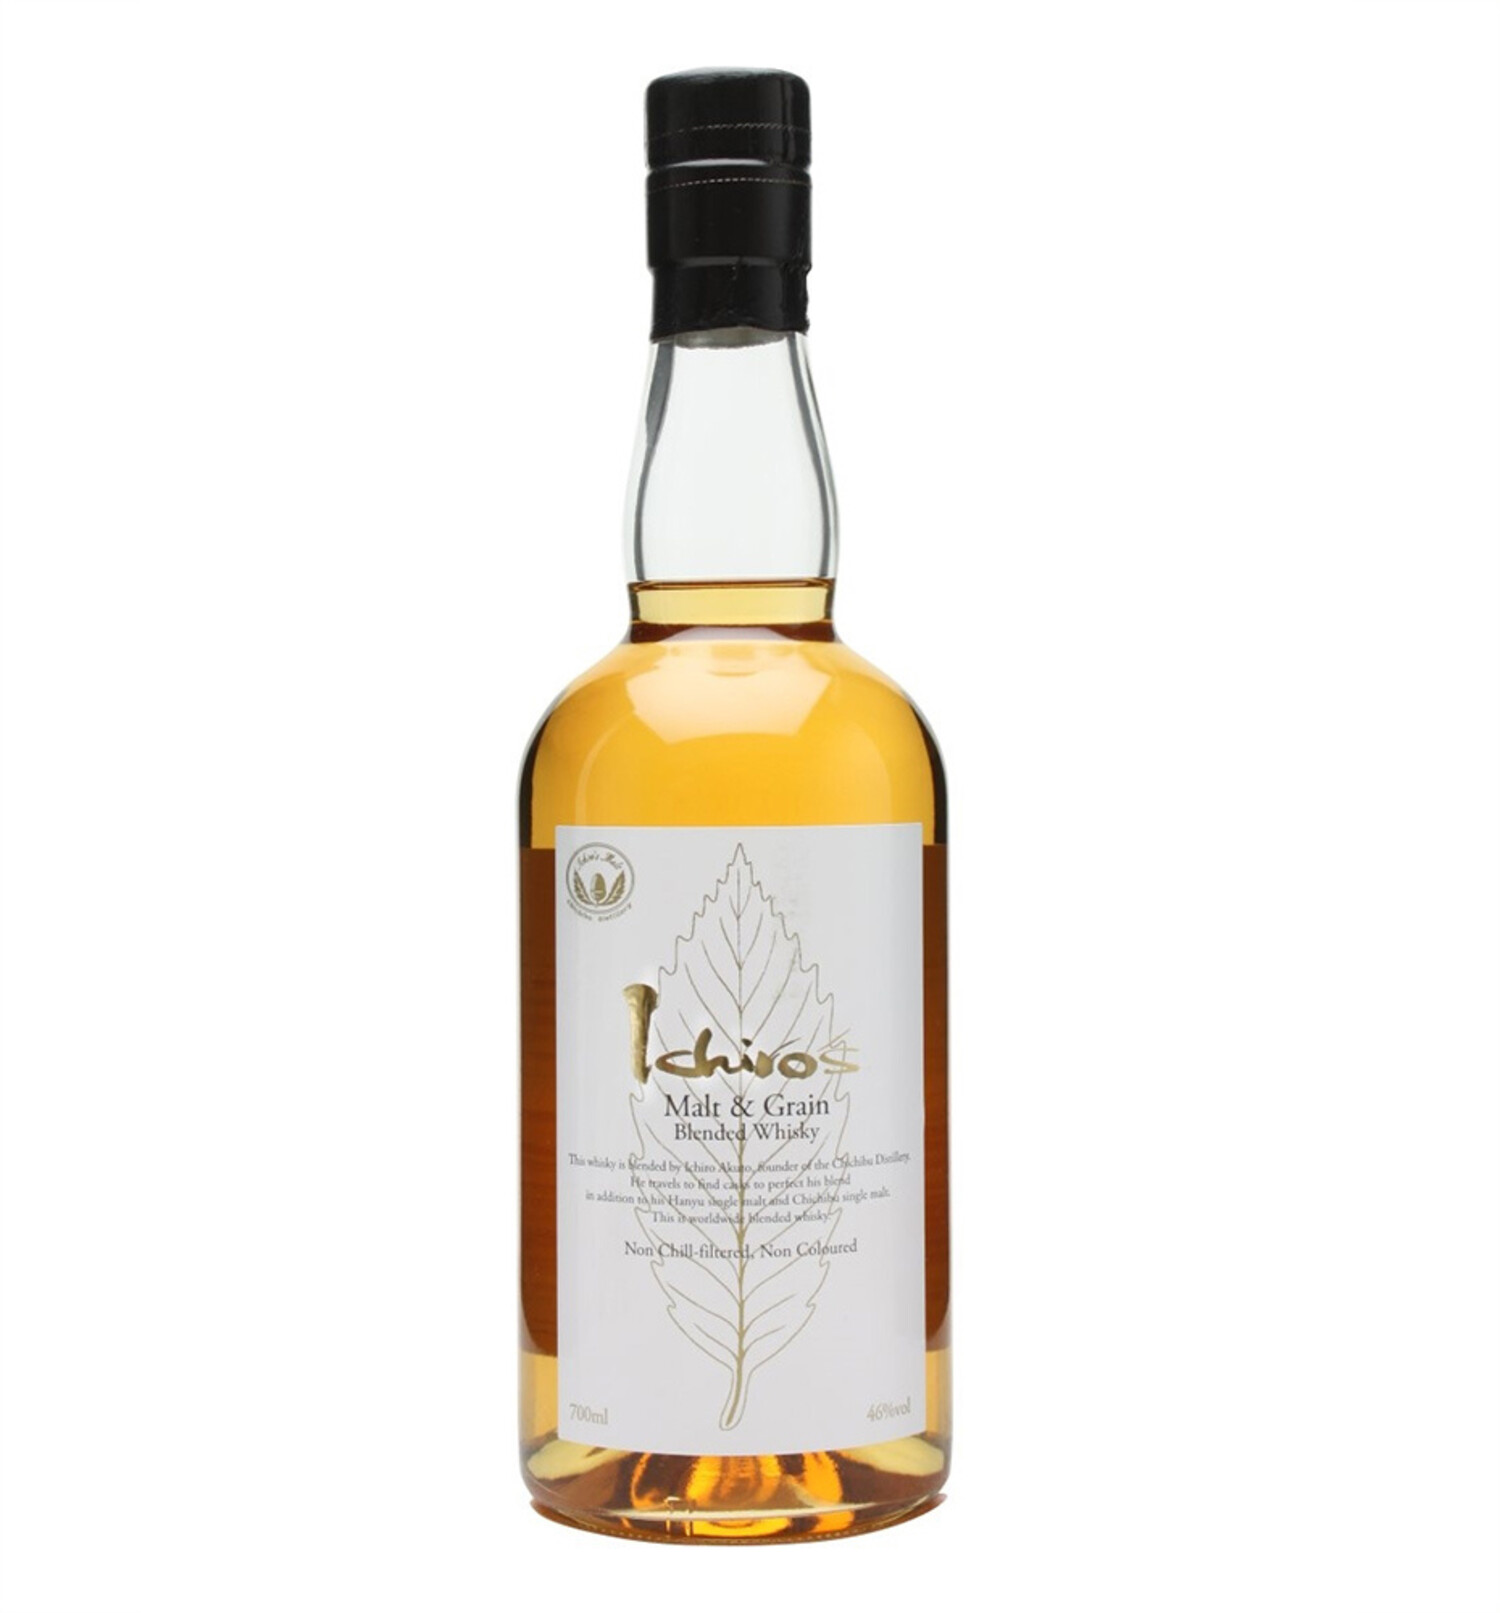 Ichiros Malt & Grain Blended Japanese Whisky 秩父白叶700ml $95 